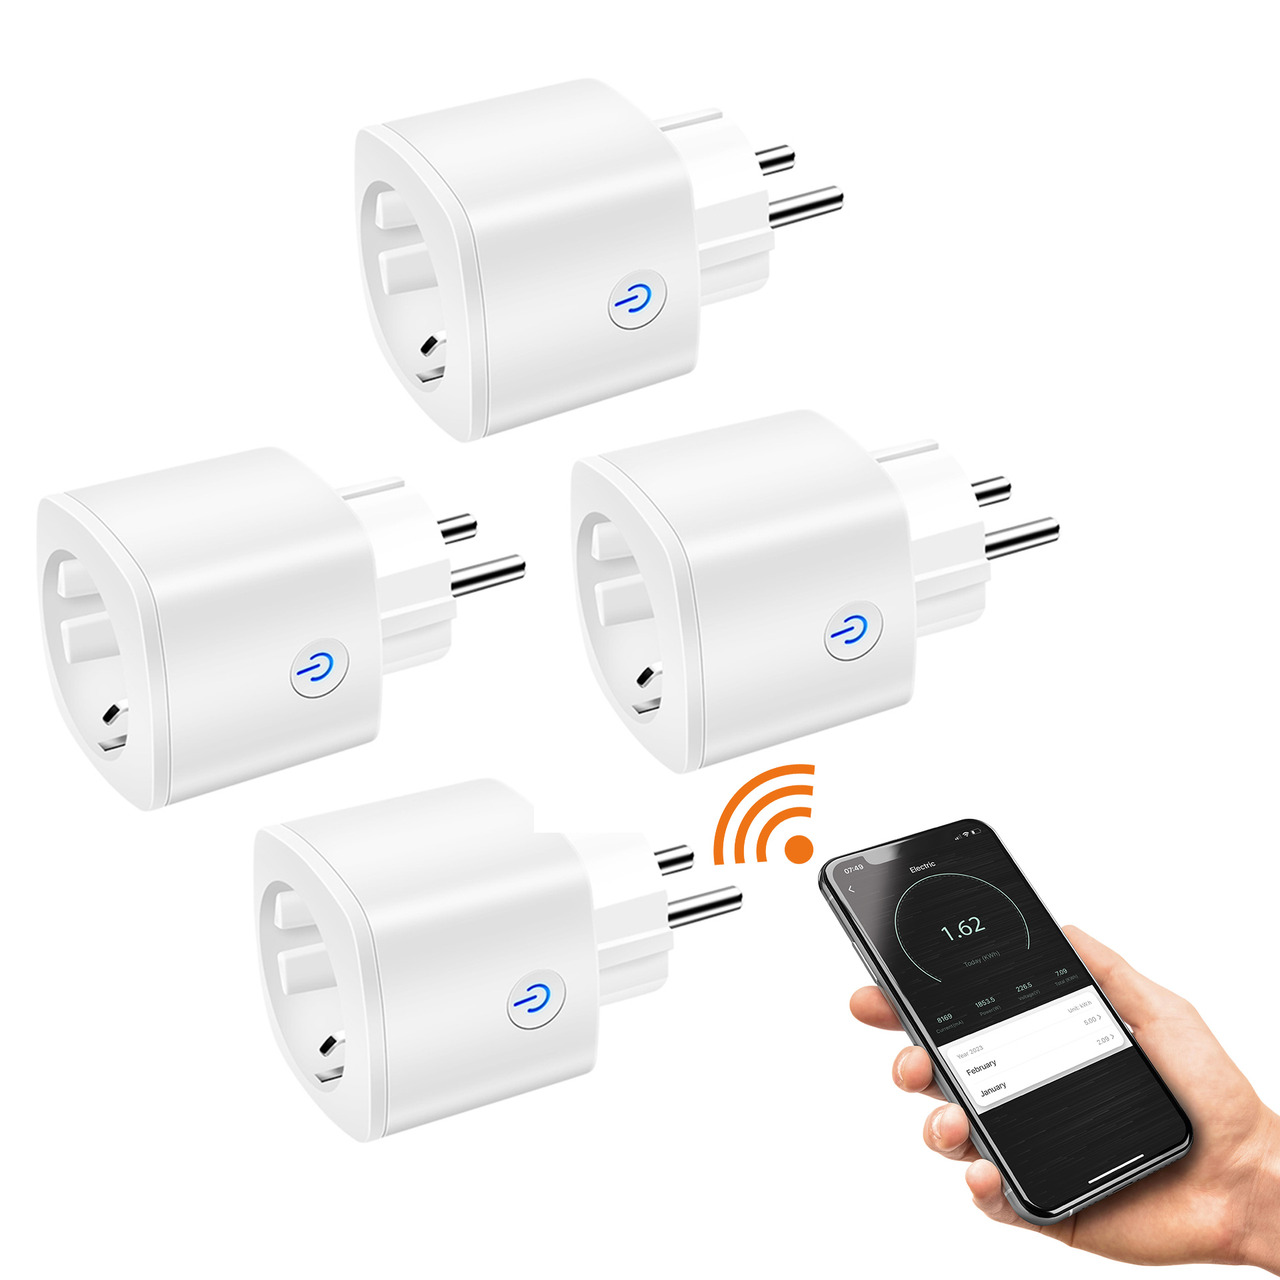 Laxihub 4er-Set smarte WiFi-Steckdose mit Energiemessung und App unter Haustechnik